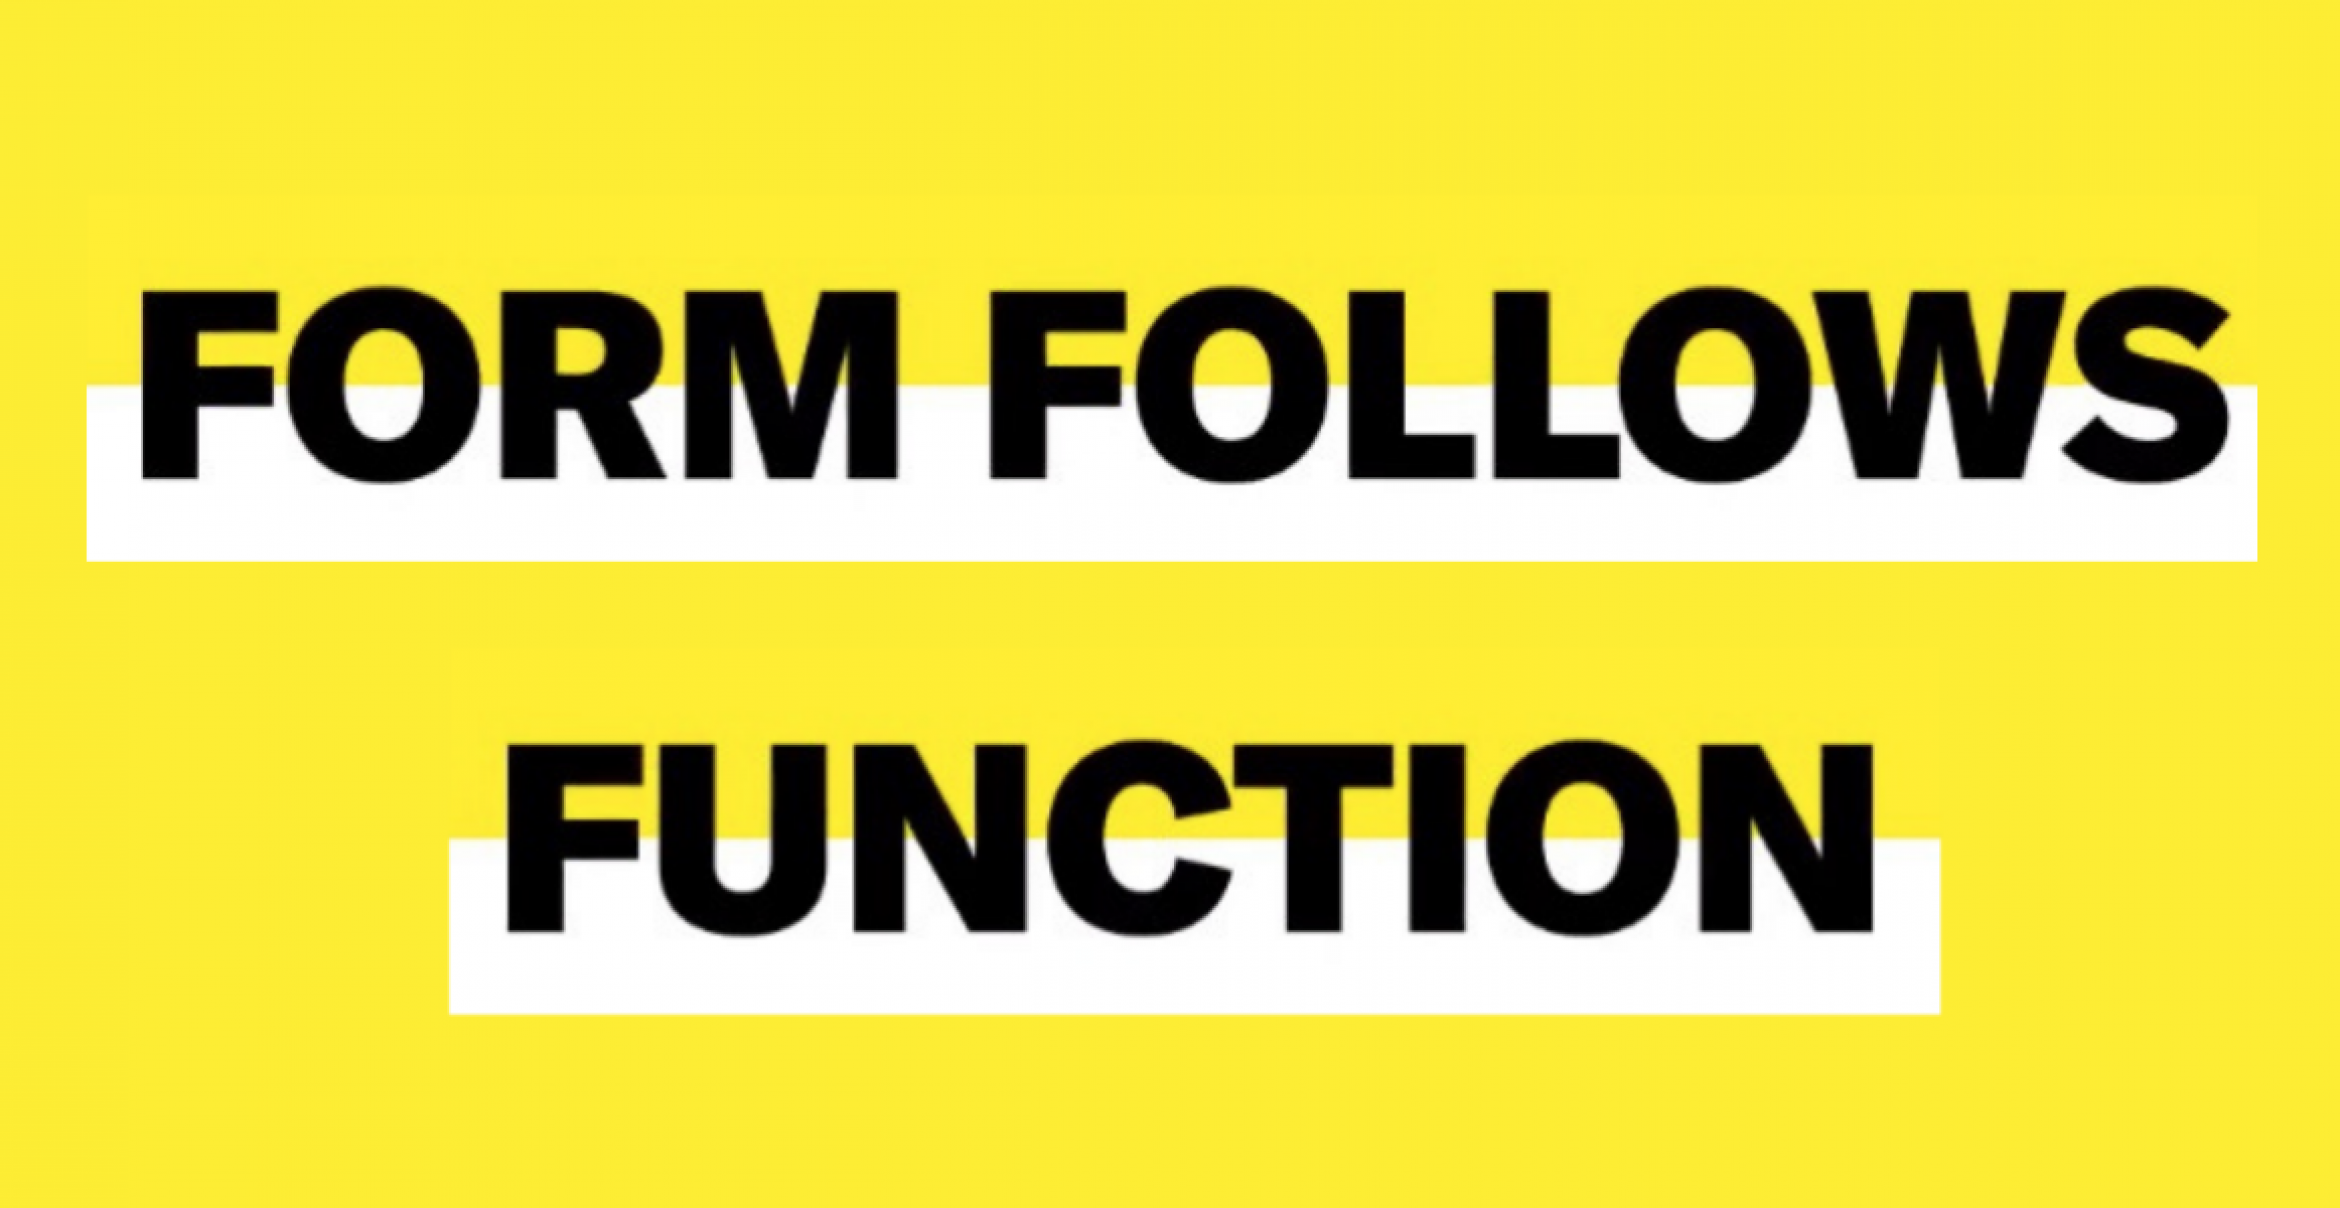 Form Follows Function: Warum ist dieser Ansatz auch heute noch so populär?